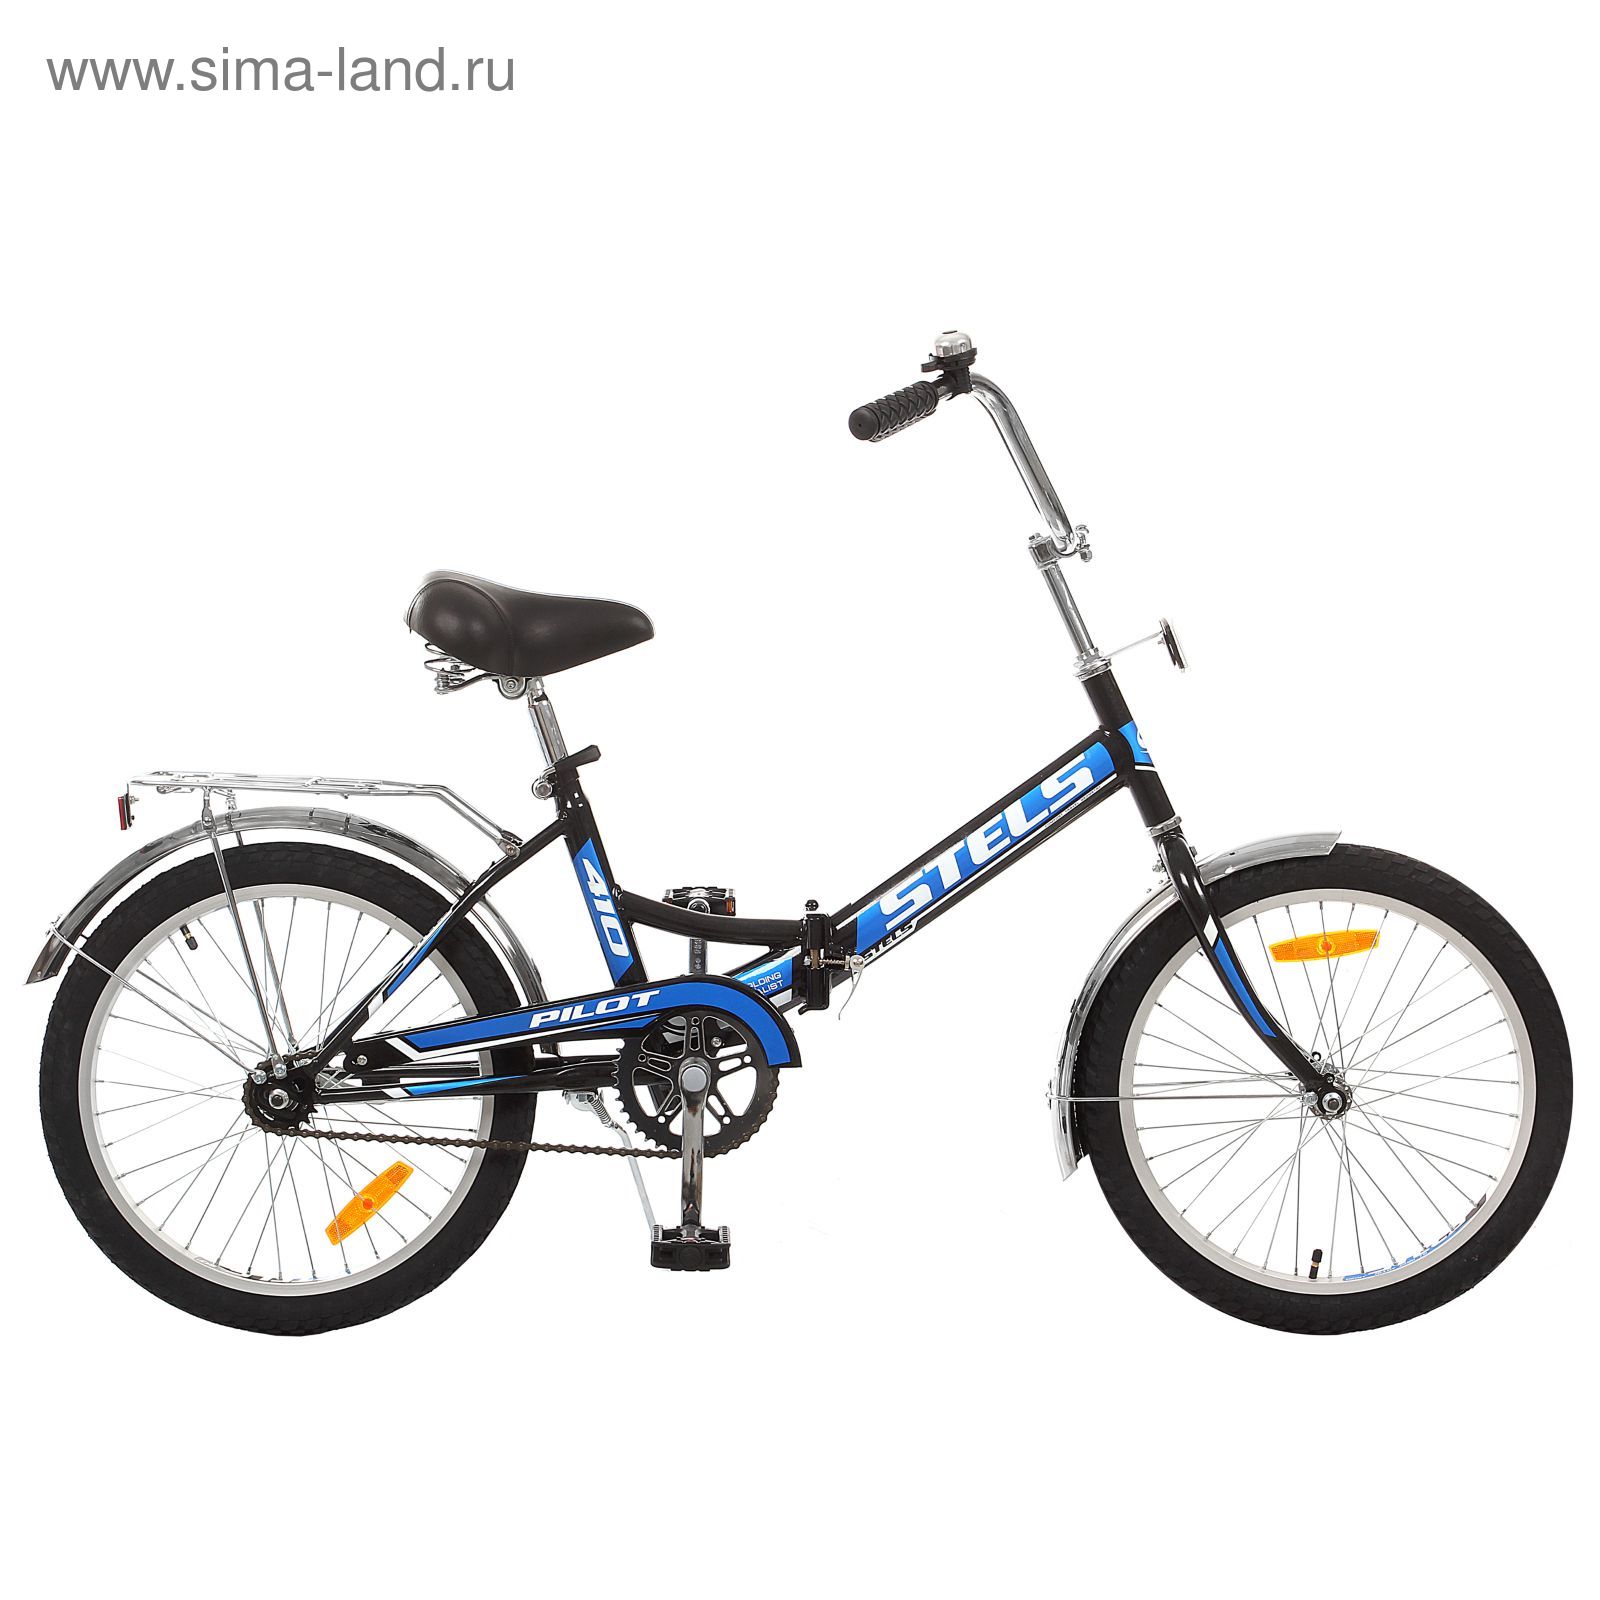 Велосипед 20" Stels Pilot-410, 2016, цвет чёрный/синий, размер 13,5"